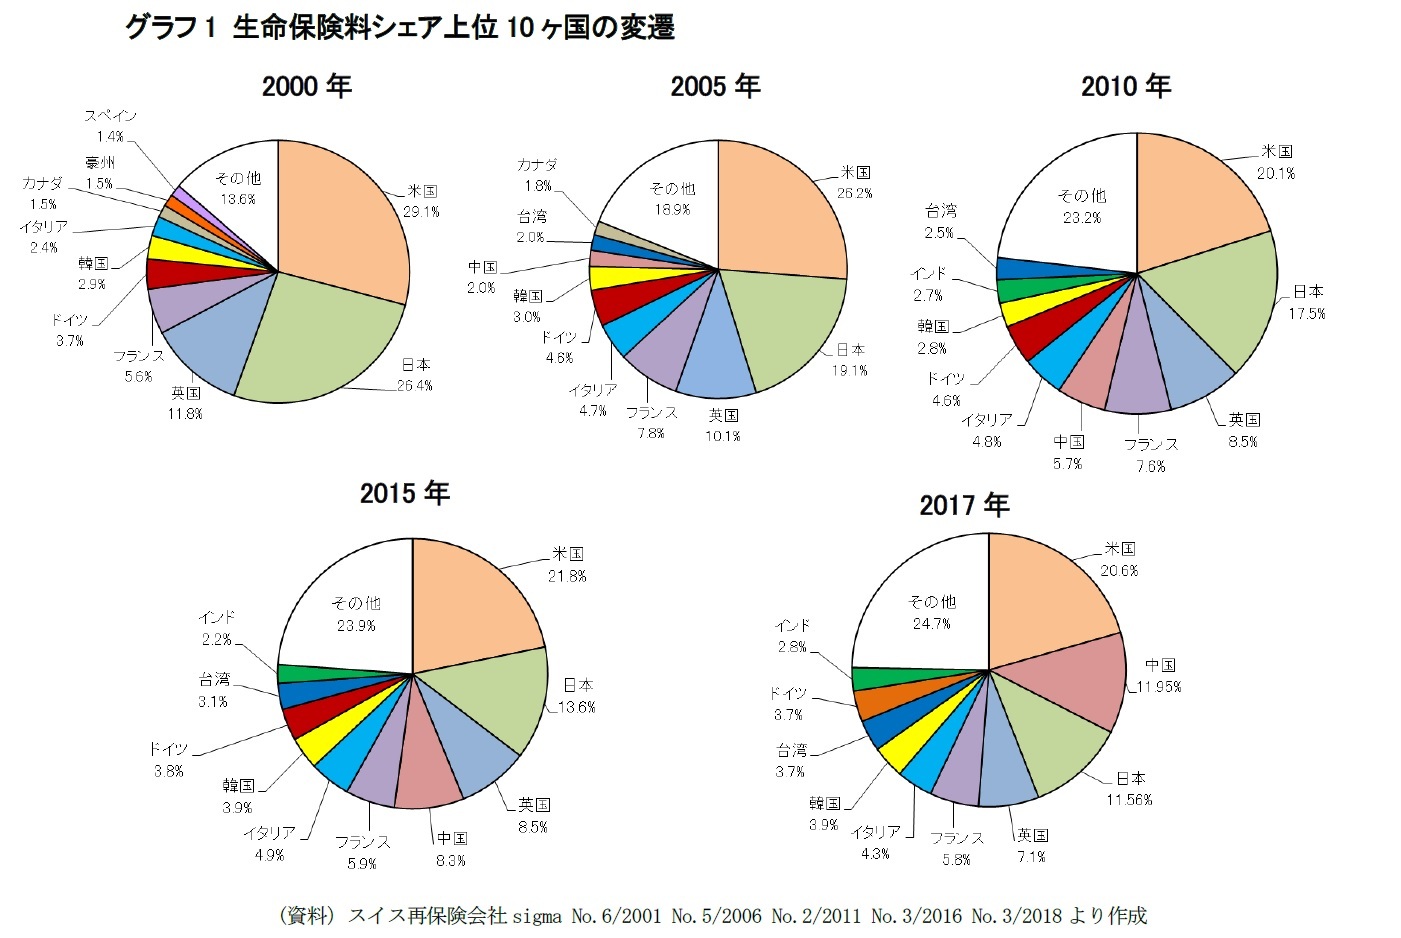 保険料で見る世界の生命保険市場17 中国が世界第2位に躍進し 日本は第3位に後退 スイス再保険のデータから ニッセイ基礎研究所